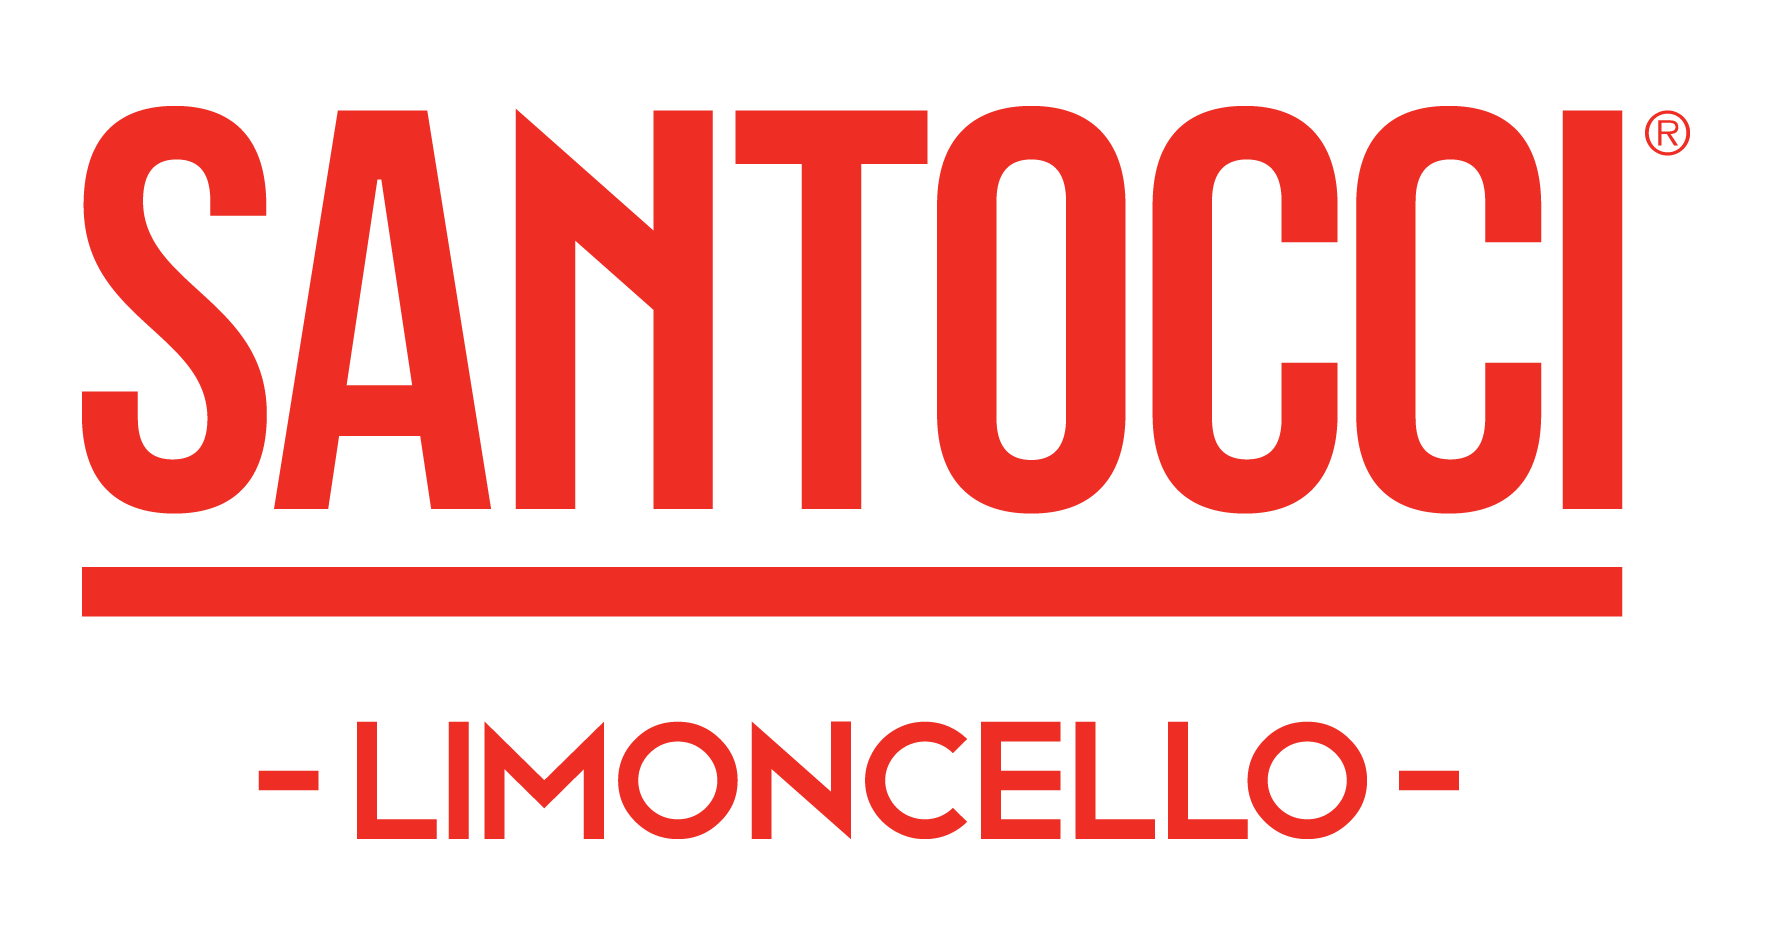 Santocci